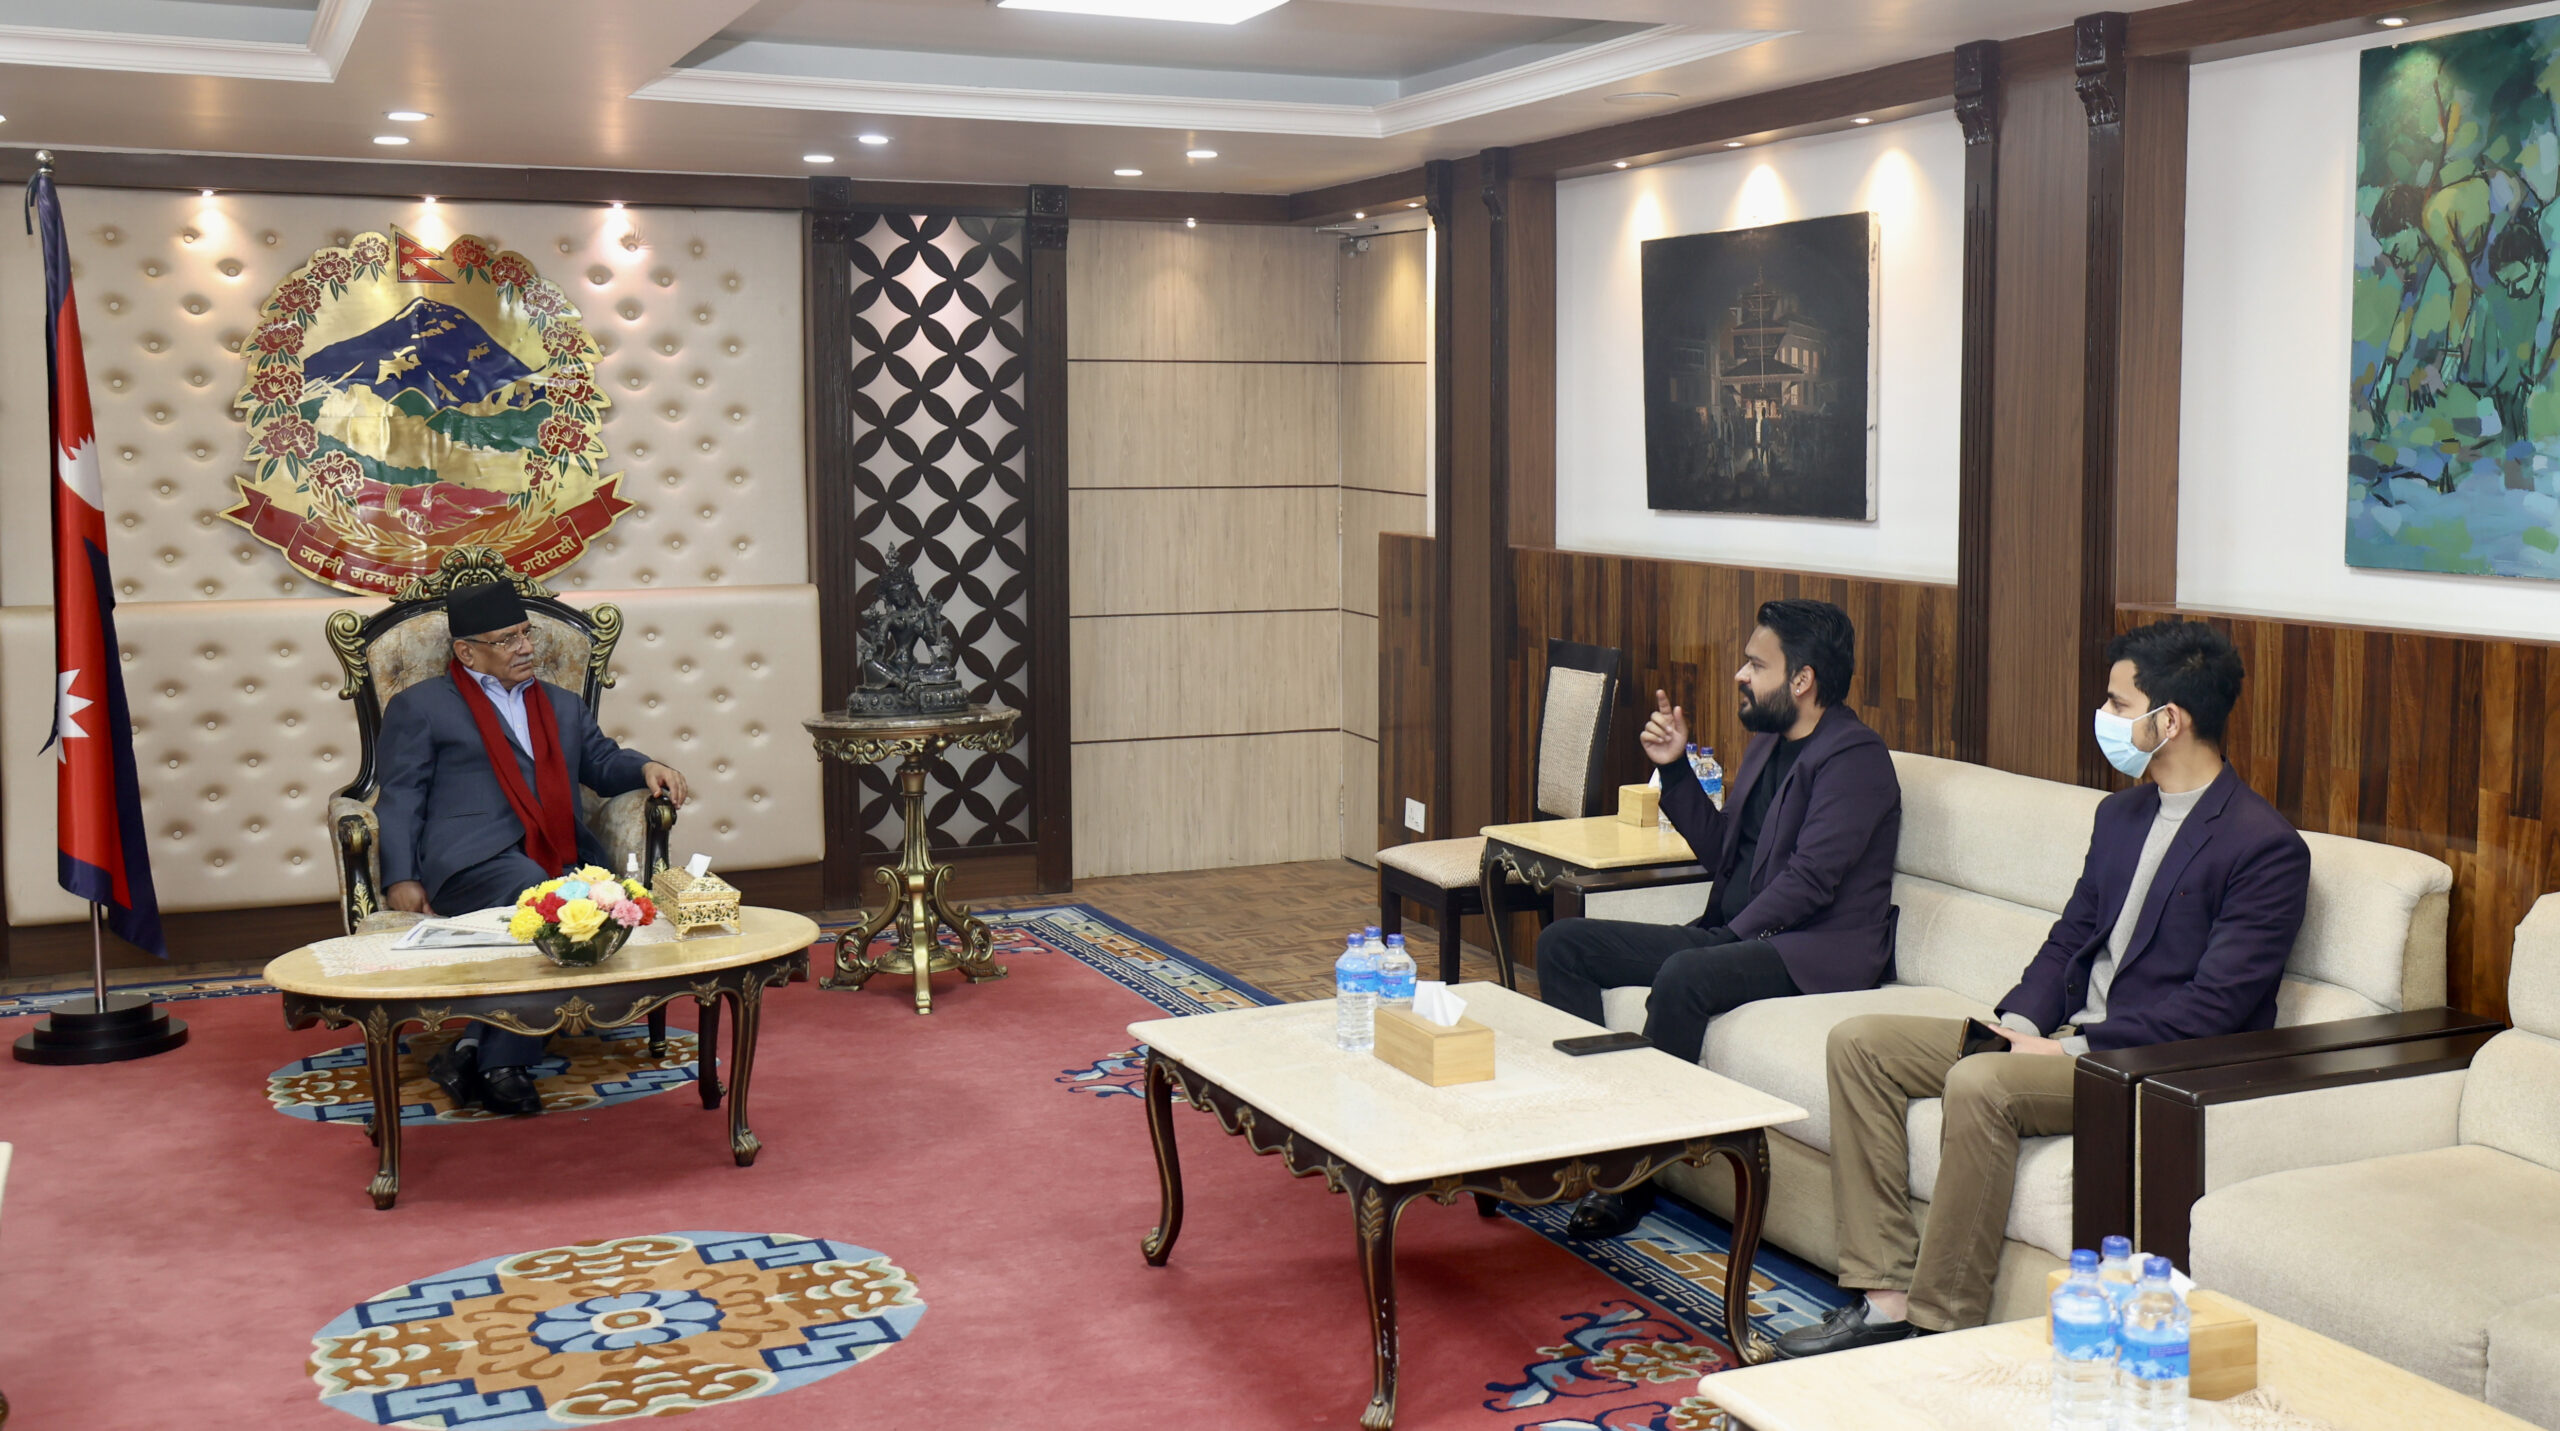 प्रधानमन्त्री दाहाल र मेयर बालेनबीच भेटवार्ताः काठमाडौँको समसामयिक विषयमा छलफल